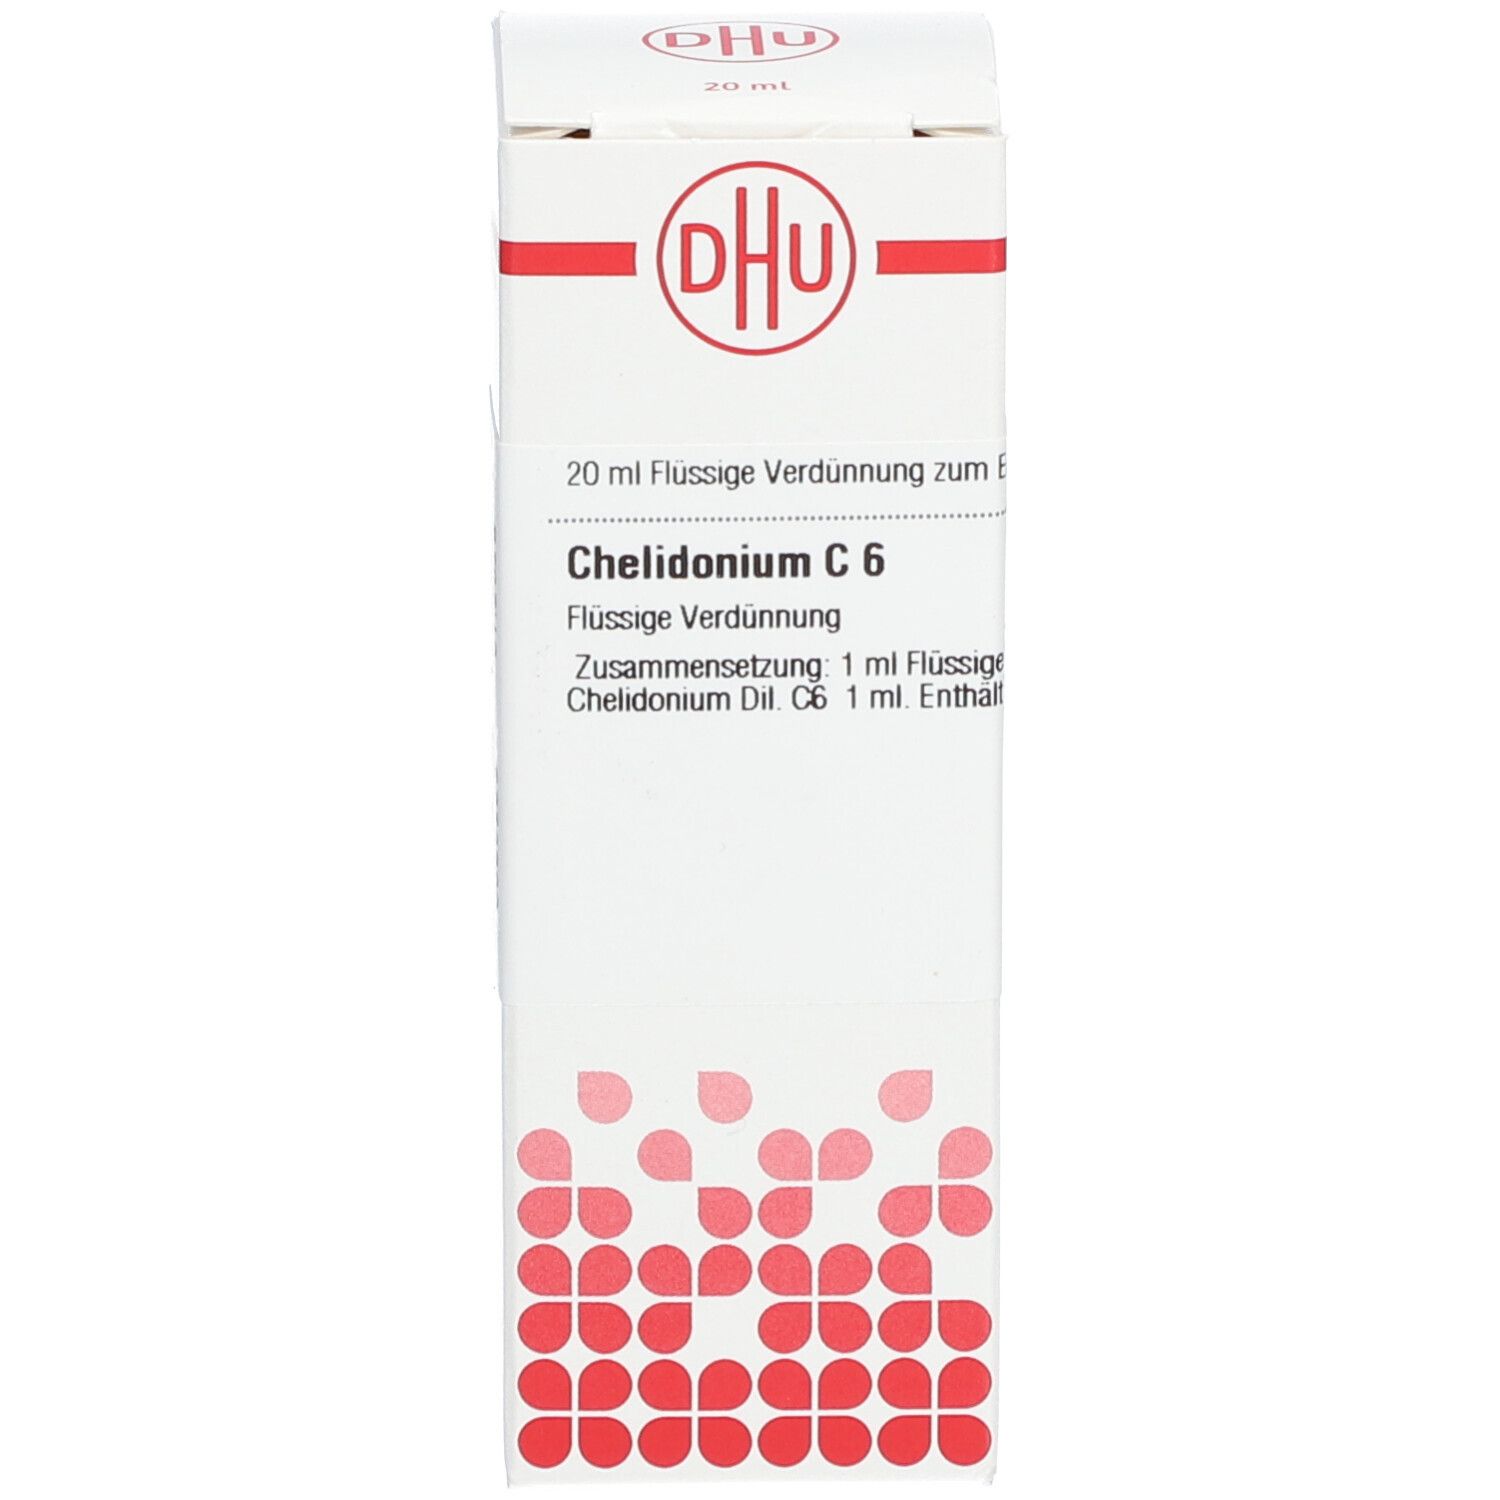 DHU Chelidonium C6